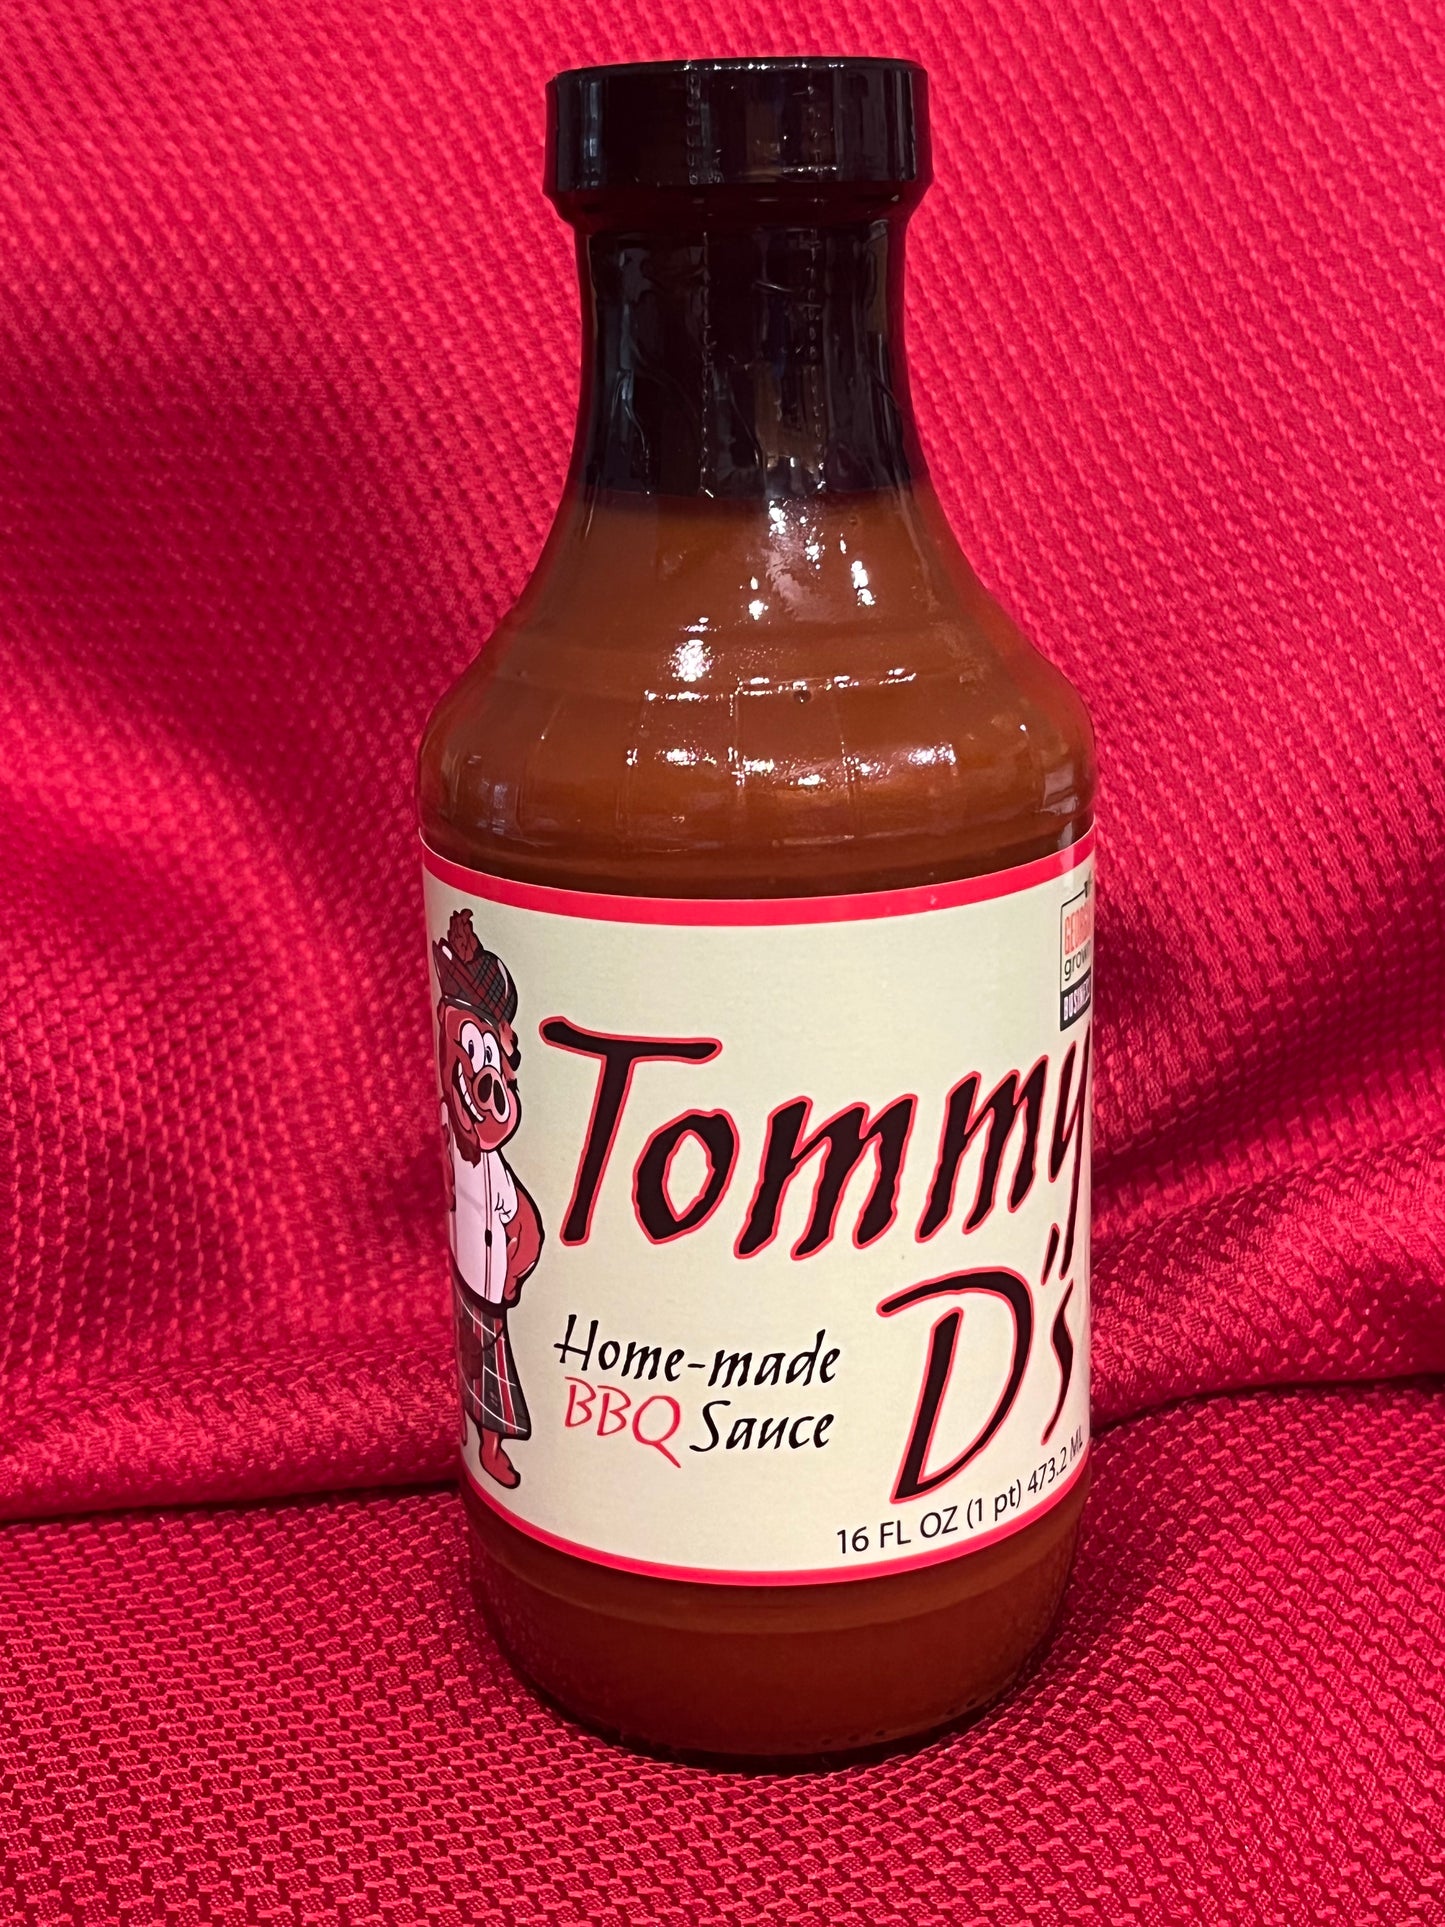 Tommy D's Original Sauce